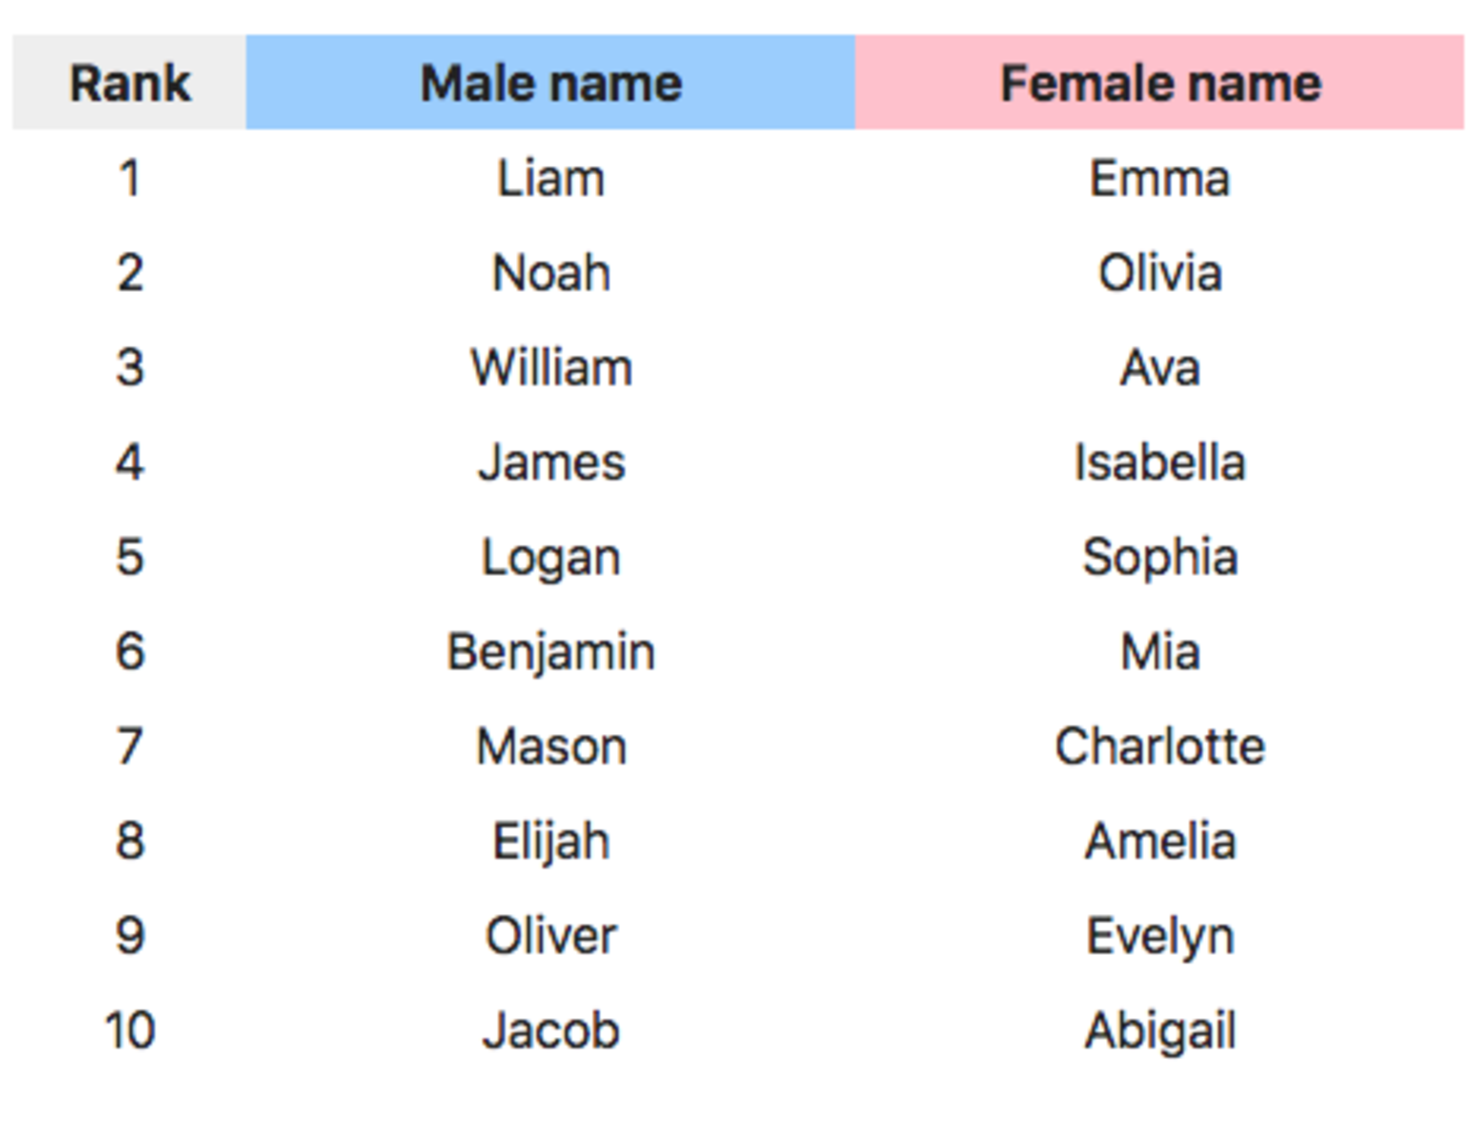 Hep names. Английские имена. Необычные английские имена. Популярные английские имена. Masculine names.